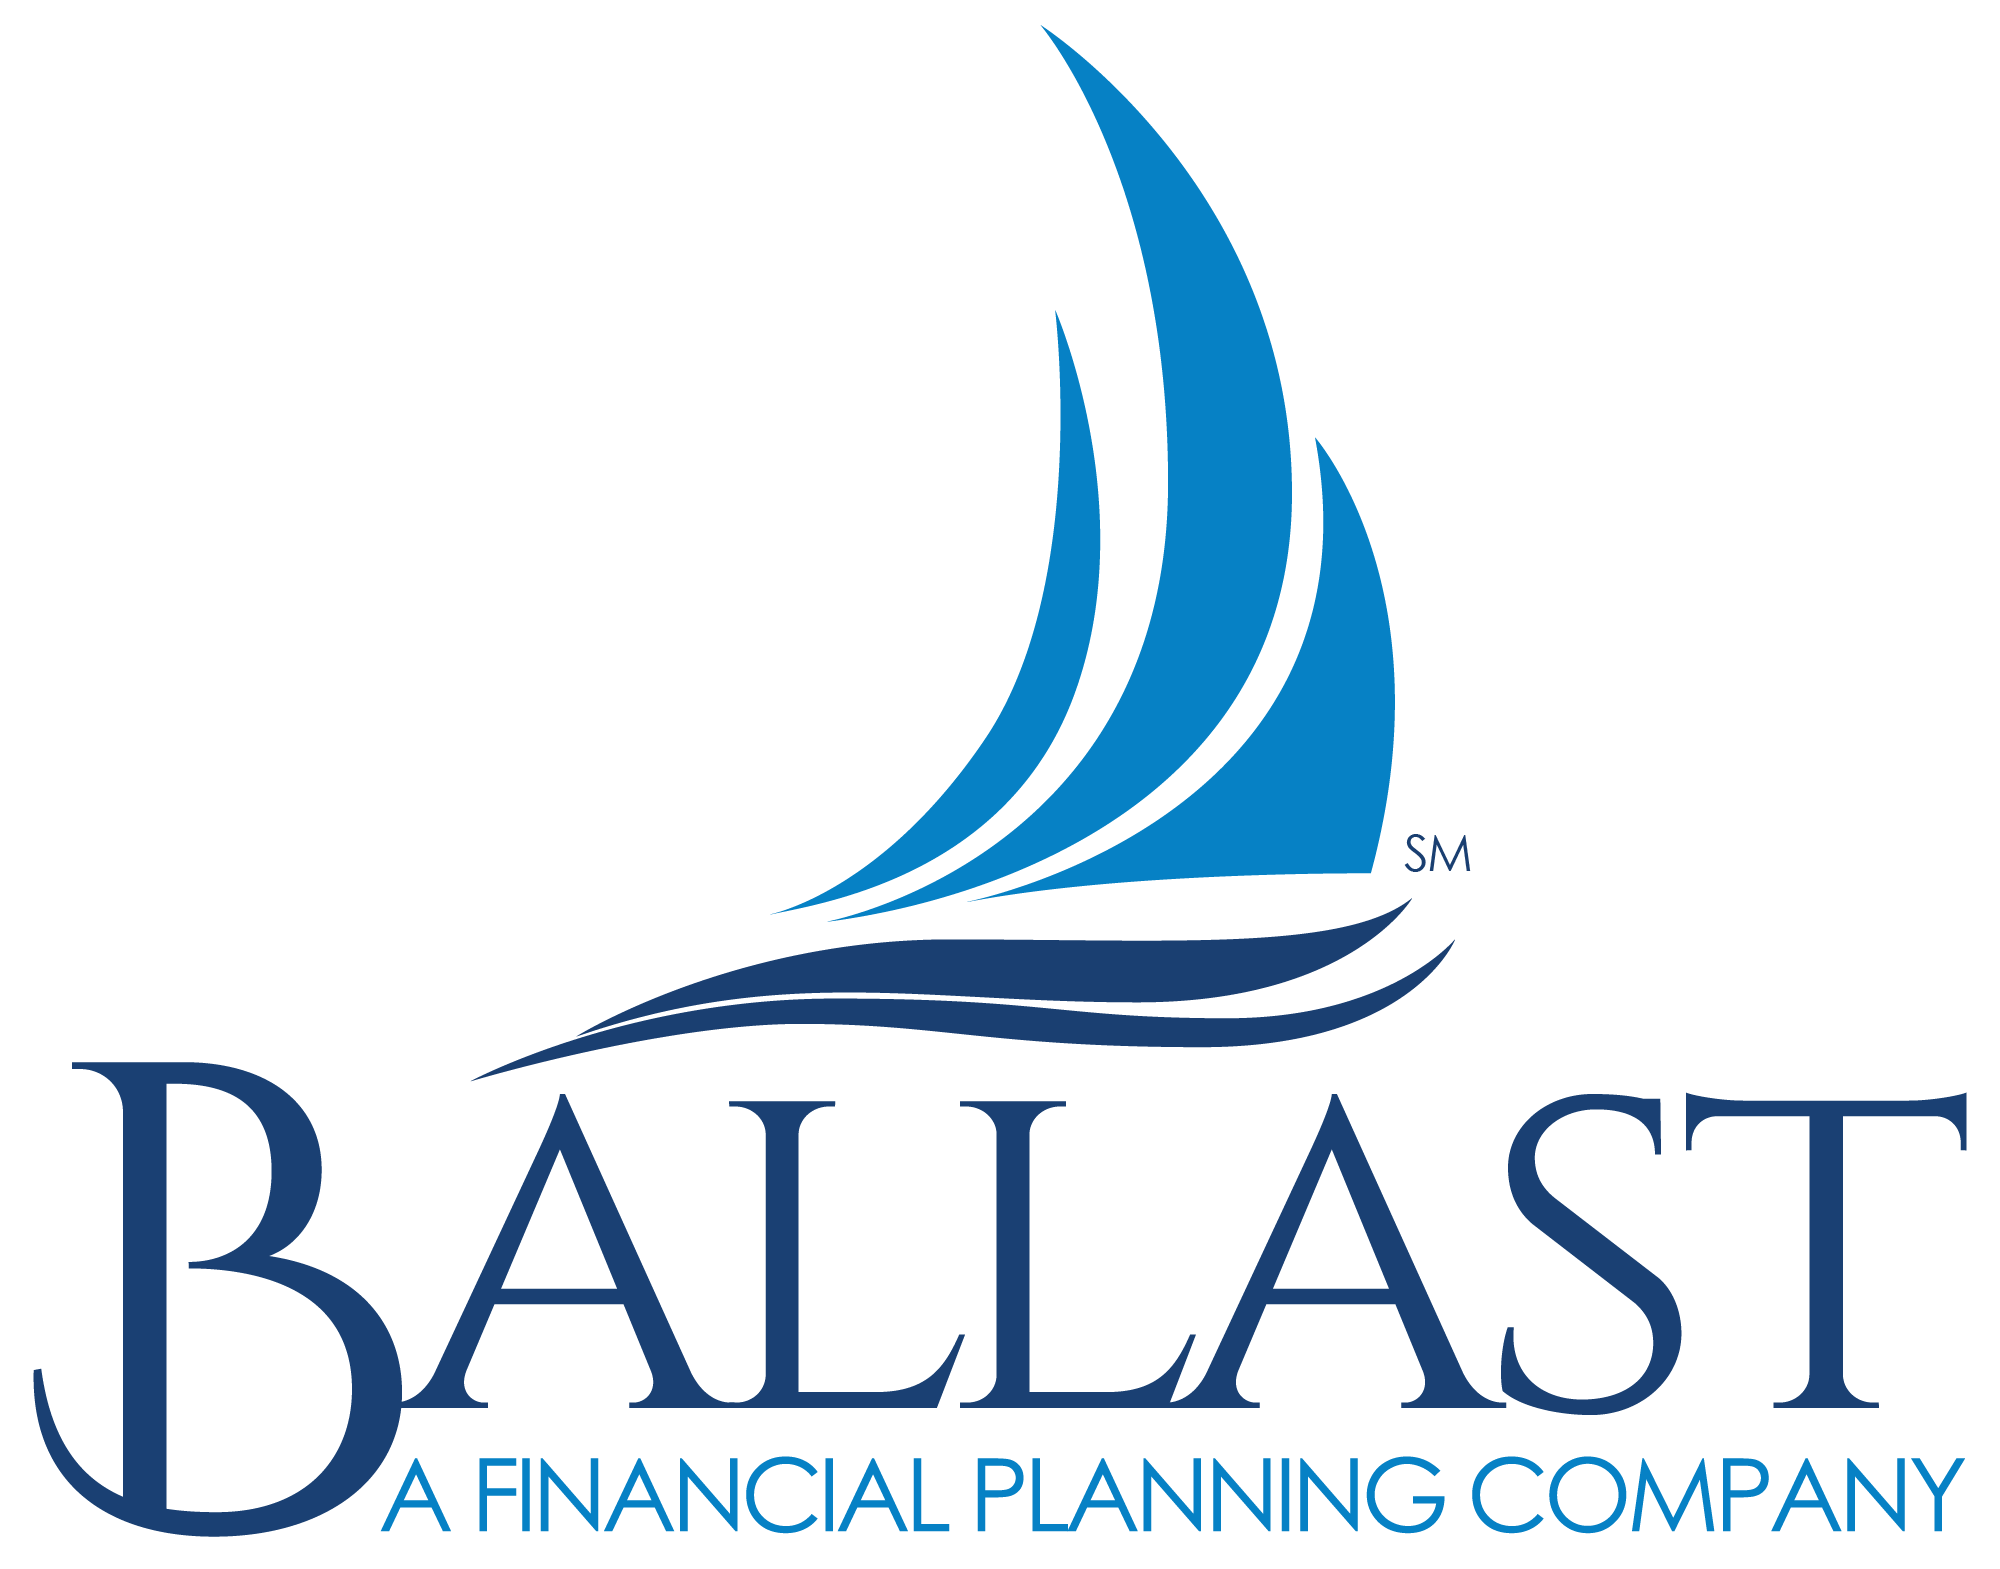 Ballast Advisors - St. Paul